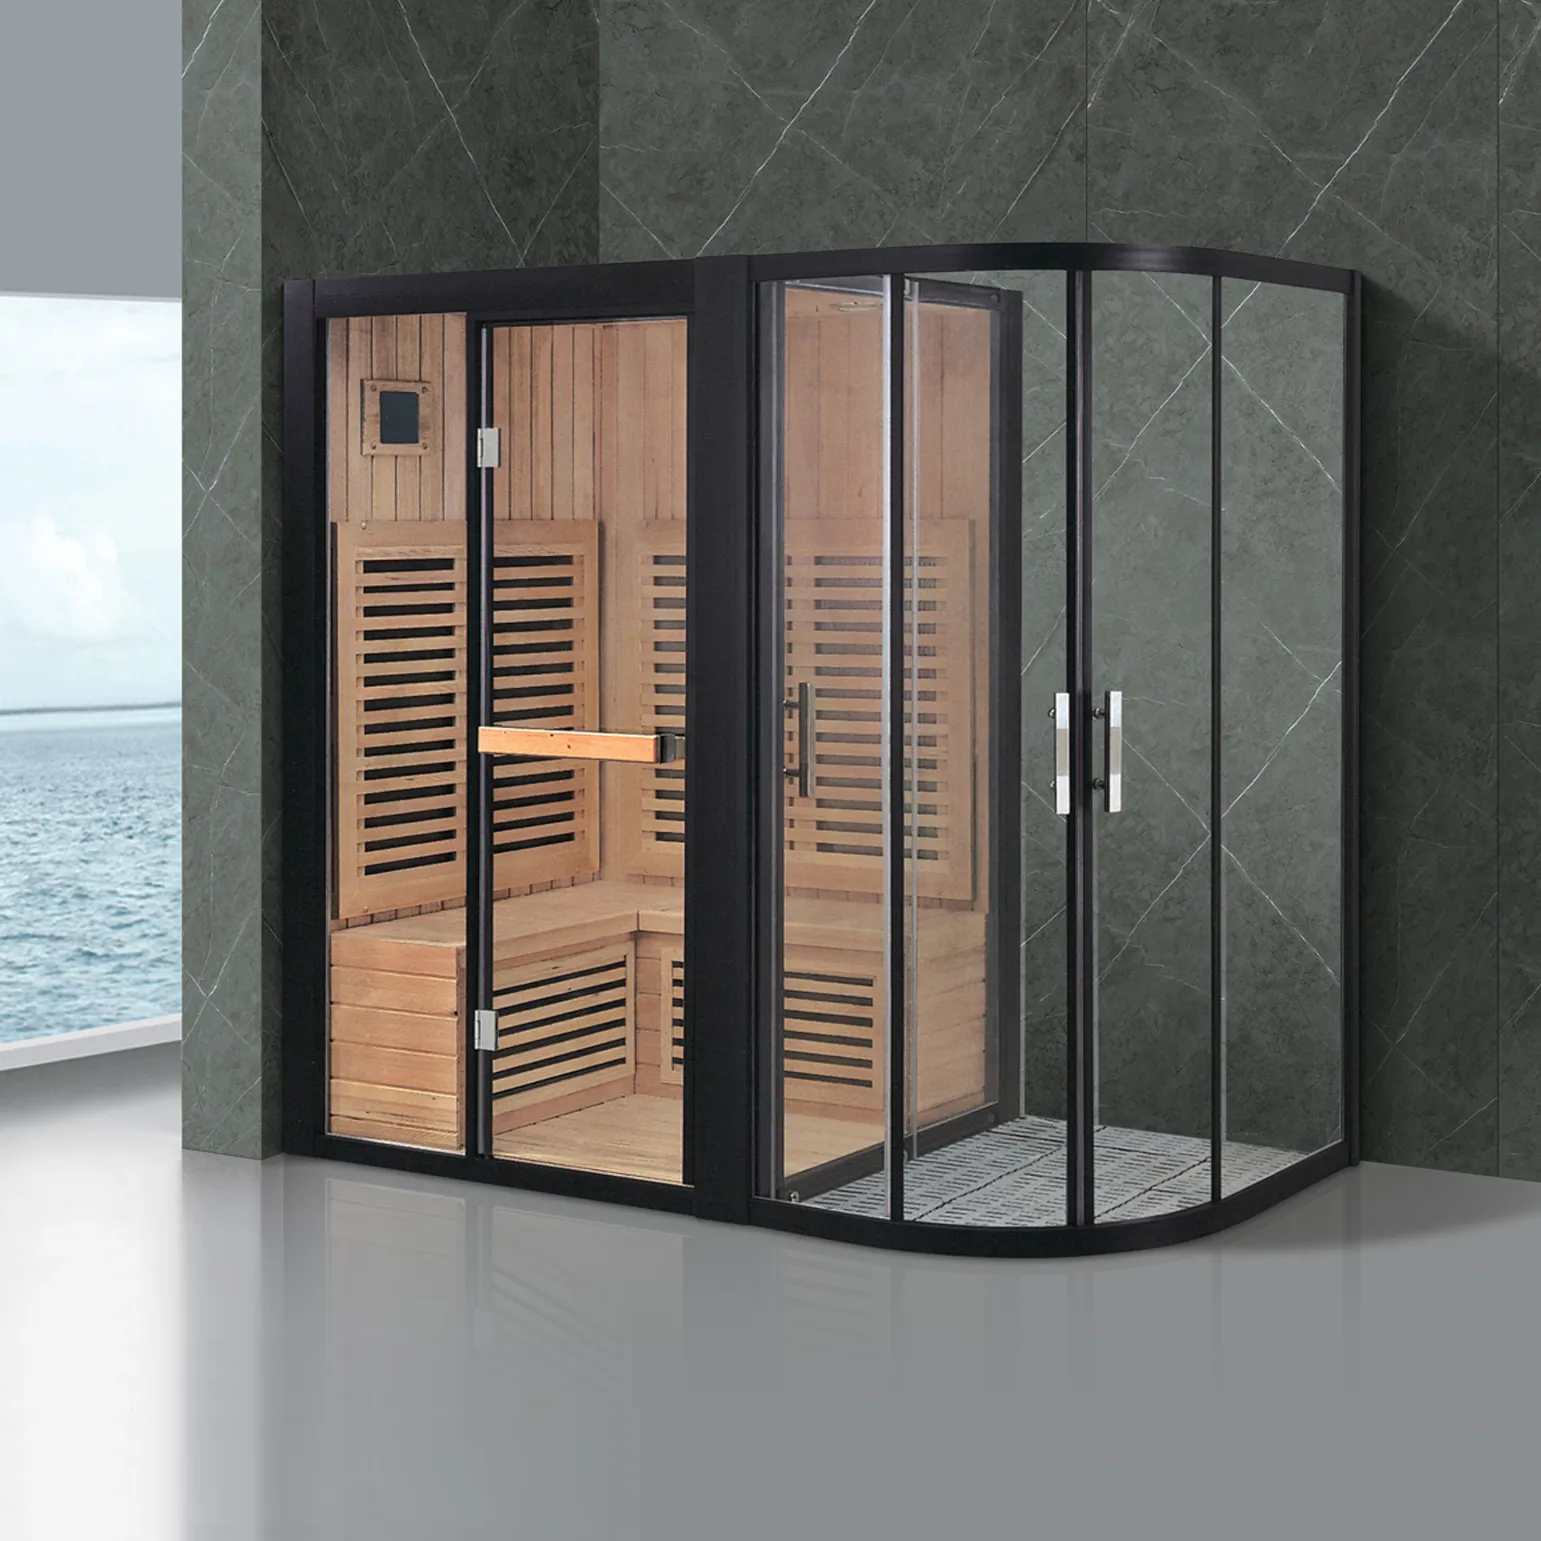 Ozono vapor sauna infravermelho para venda/sauna preços sauna quartos vapor